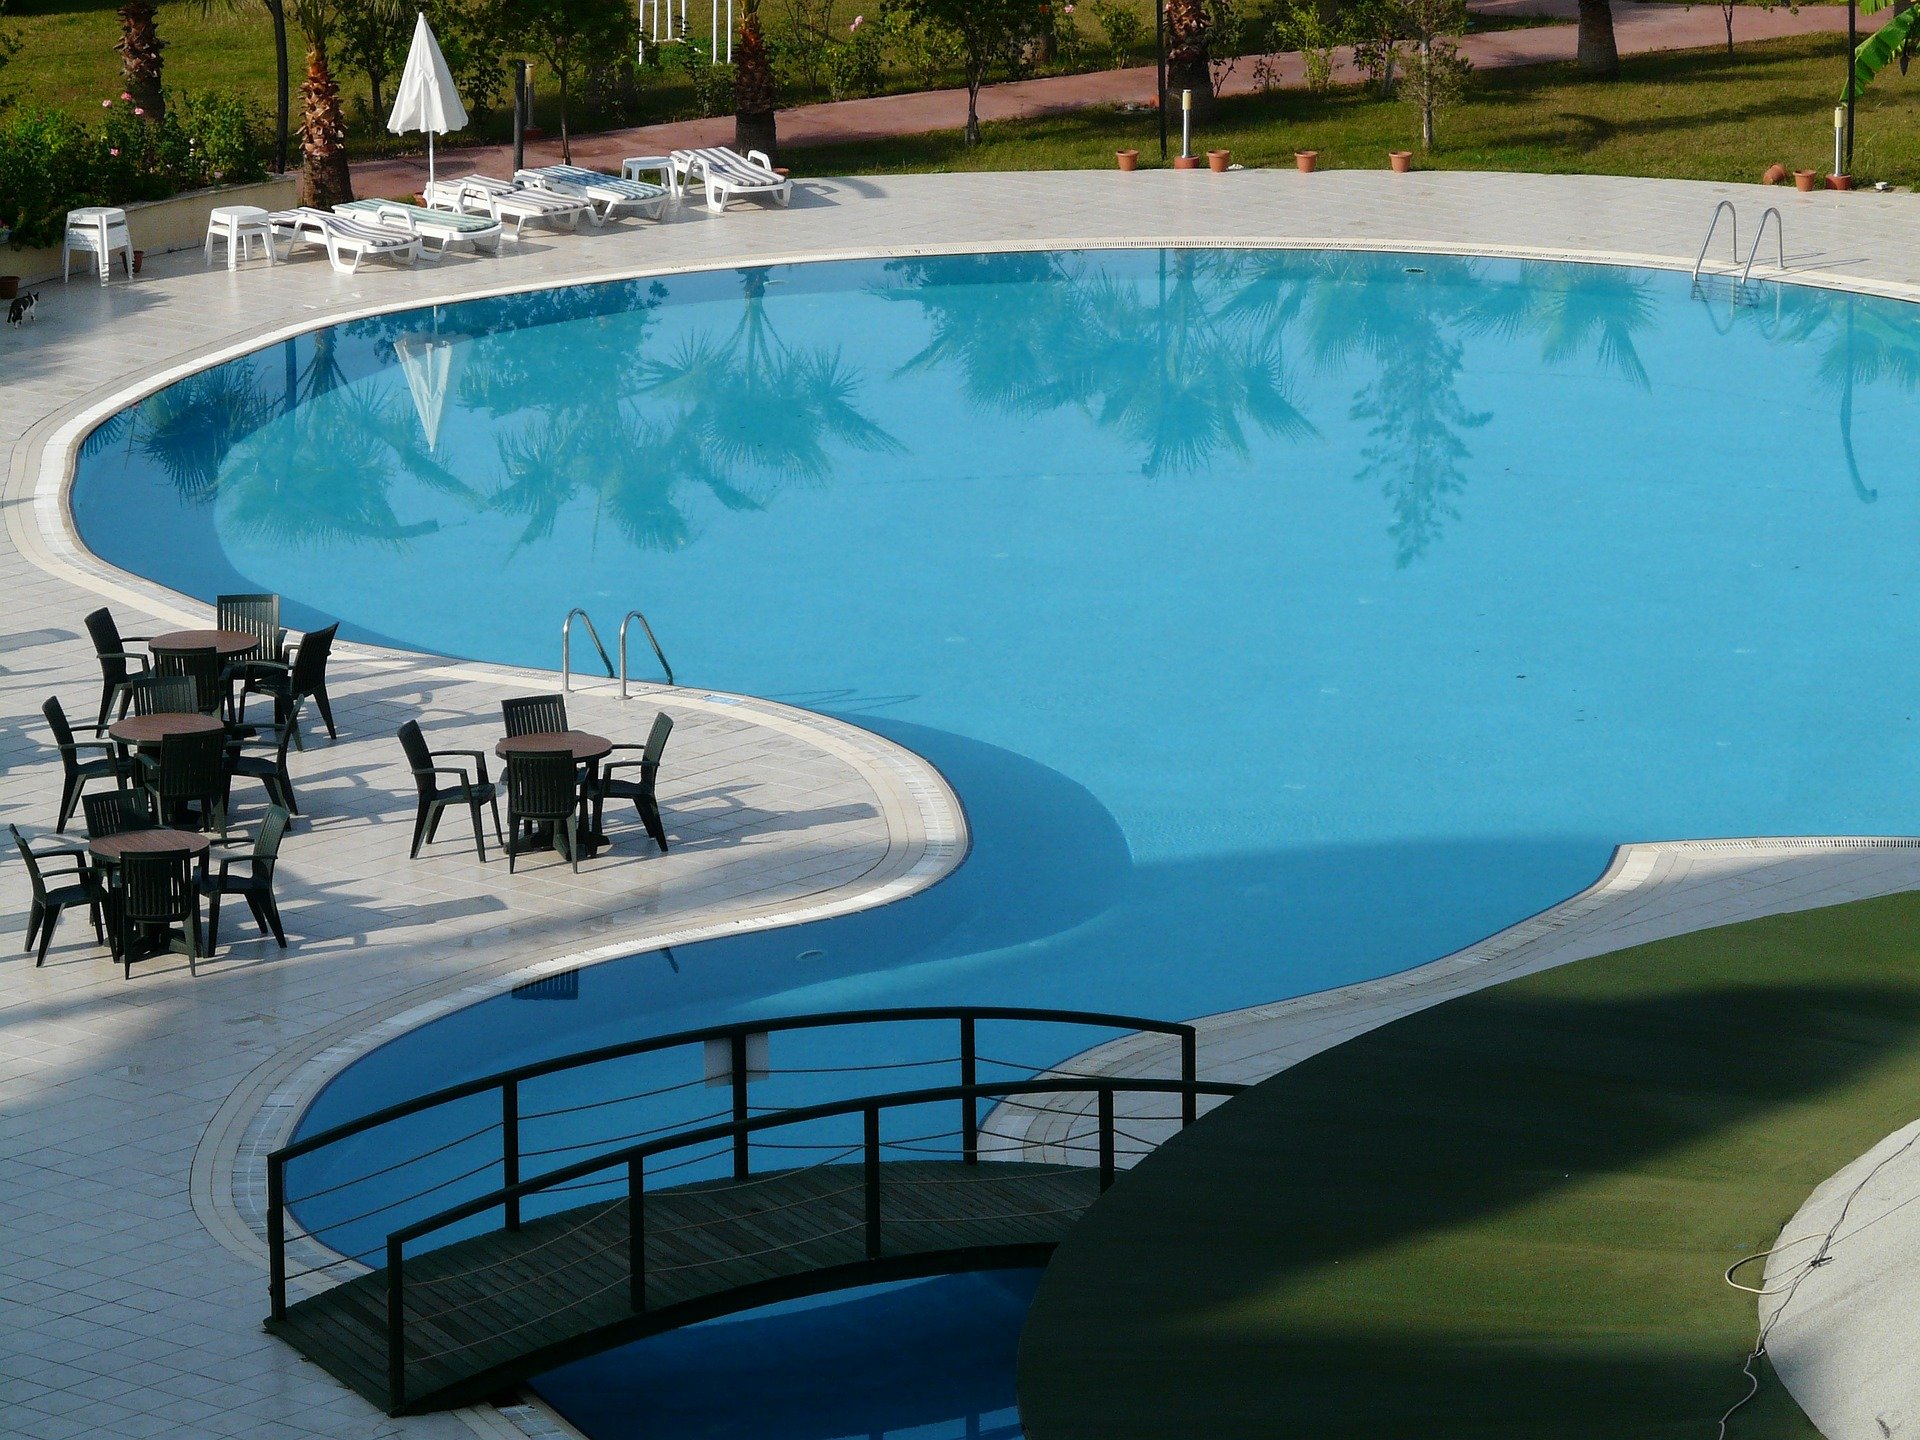 Vista de una piscina al aire libre. | Foto: Pixabay